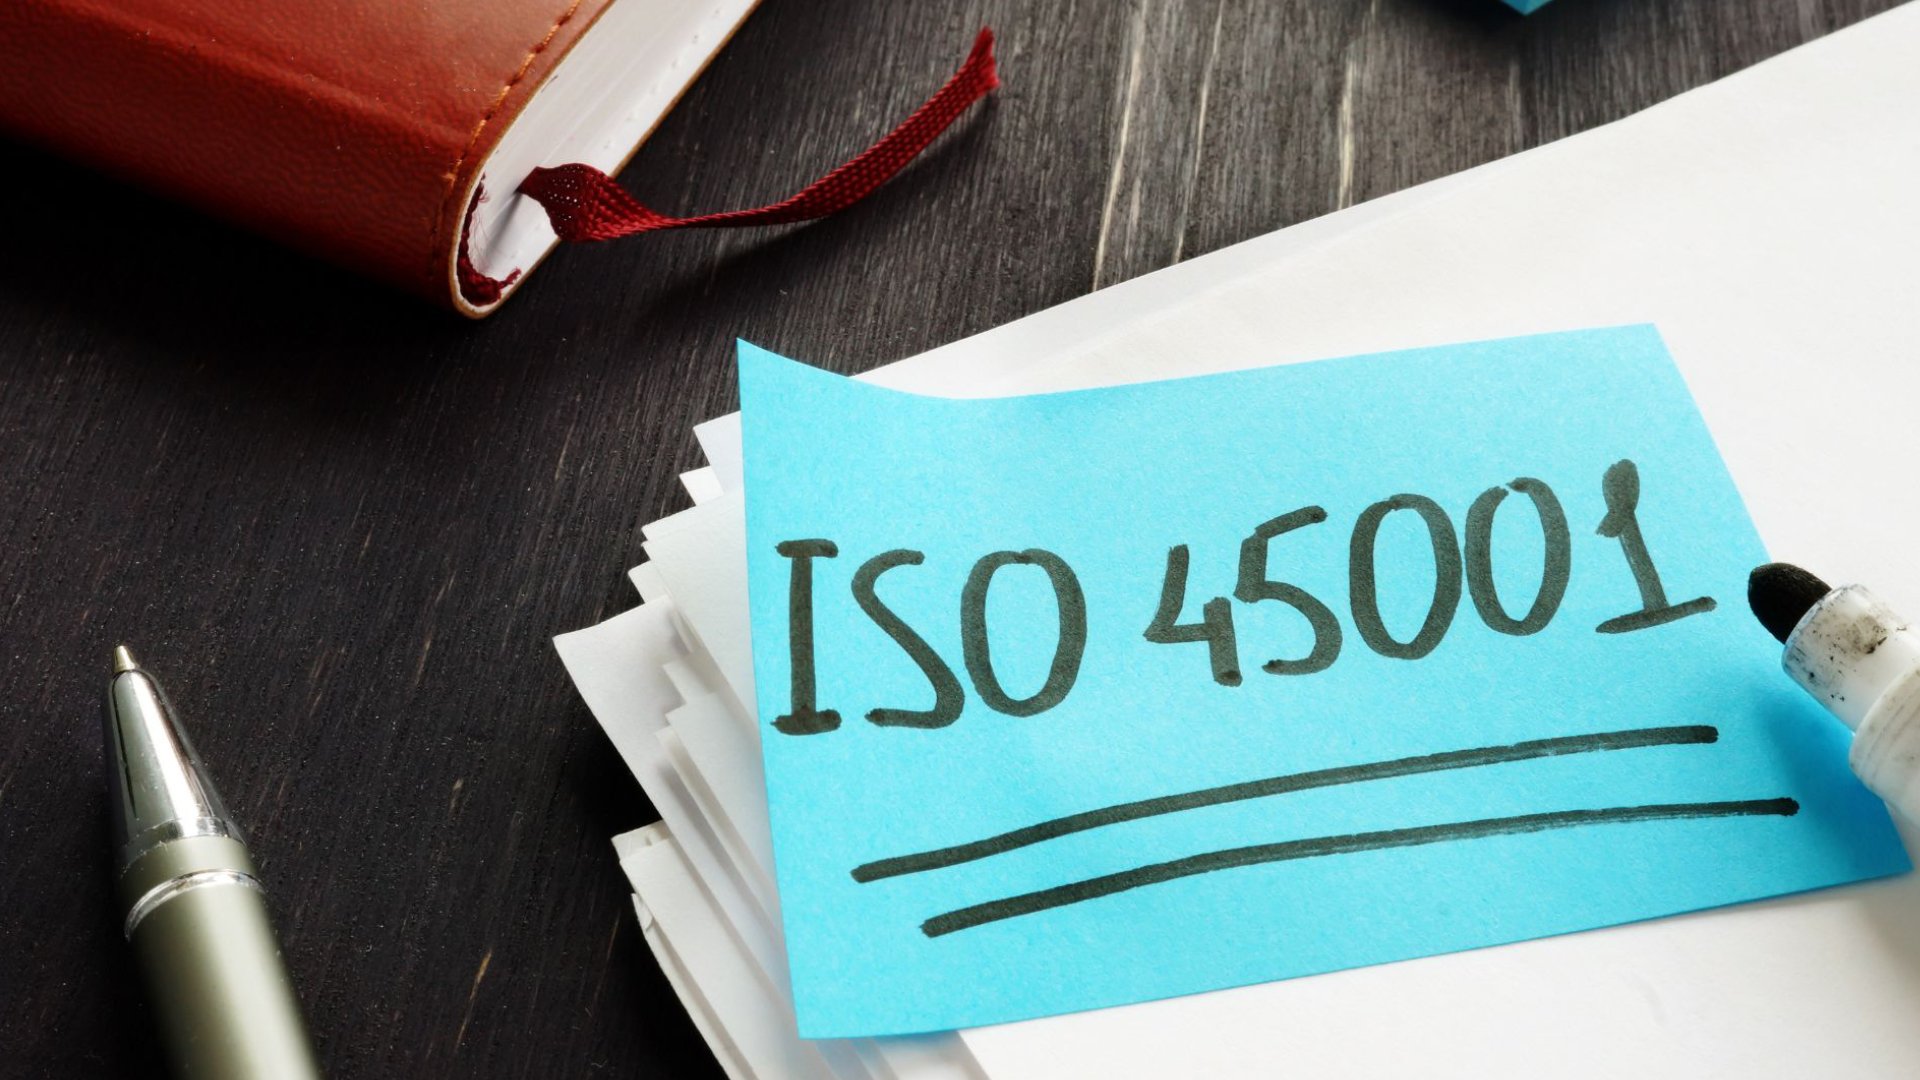 Co to jest ISO 45001 i jak uzyskać certyfikat ISO 45001:2018?